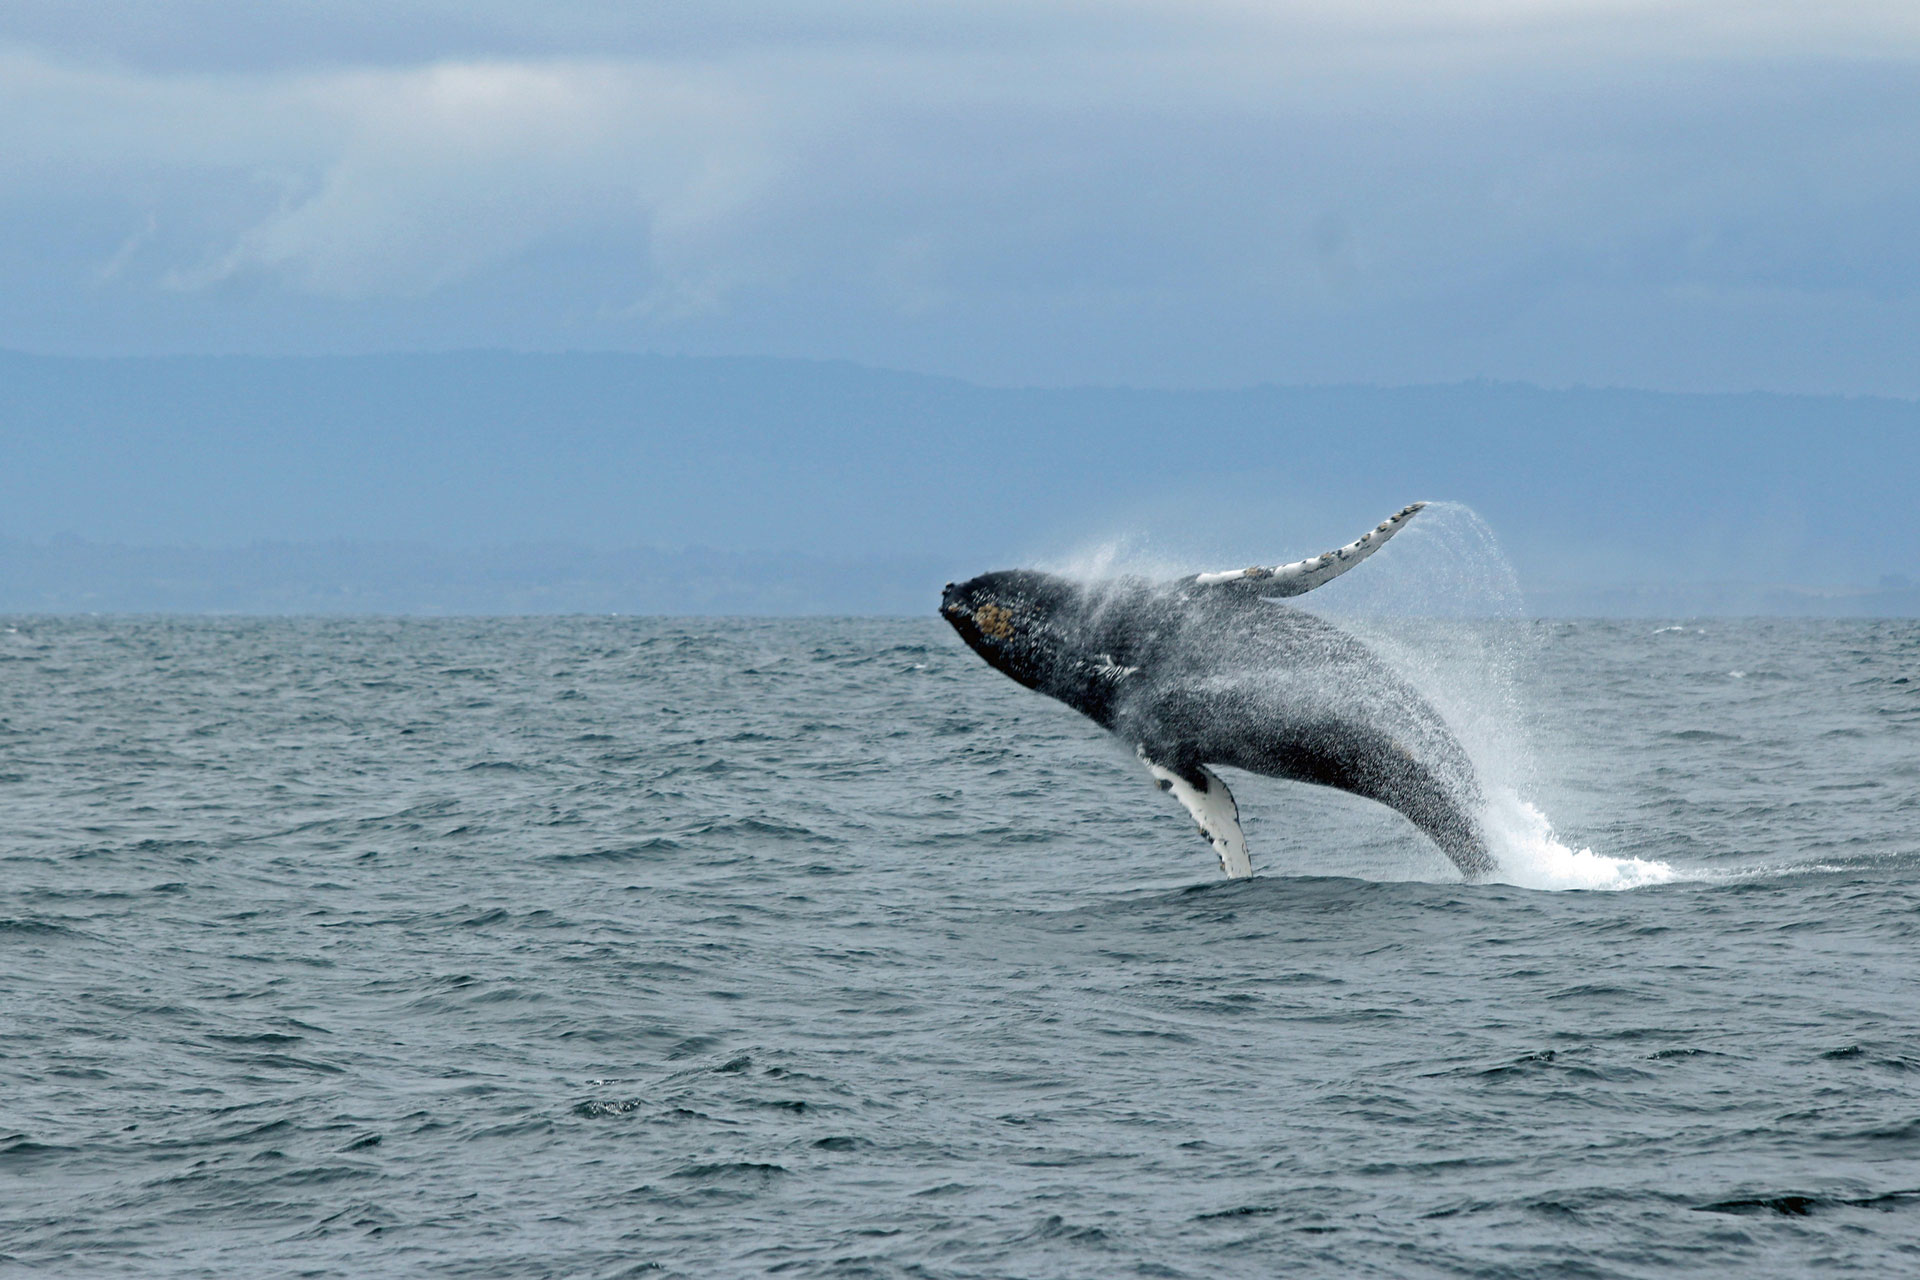 Whale breach. Photo